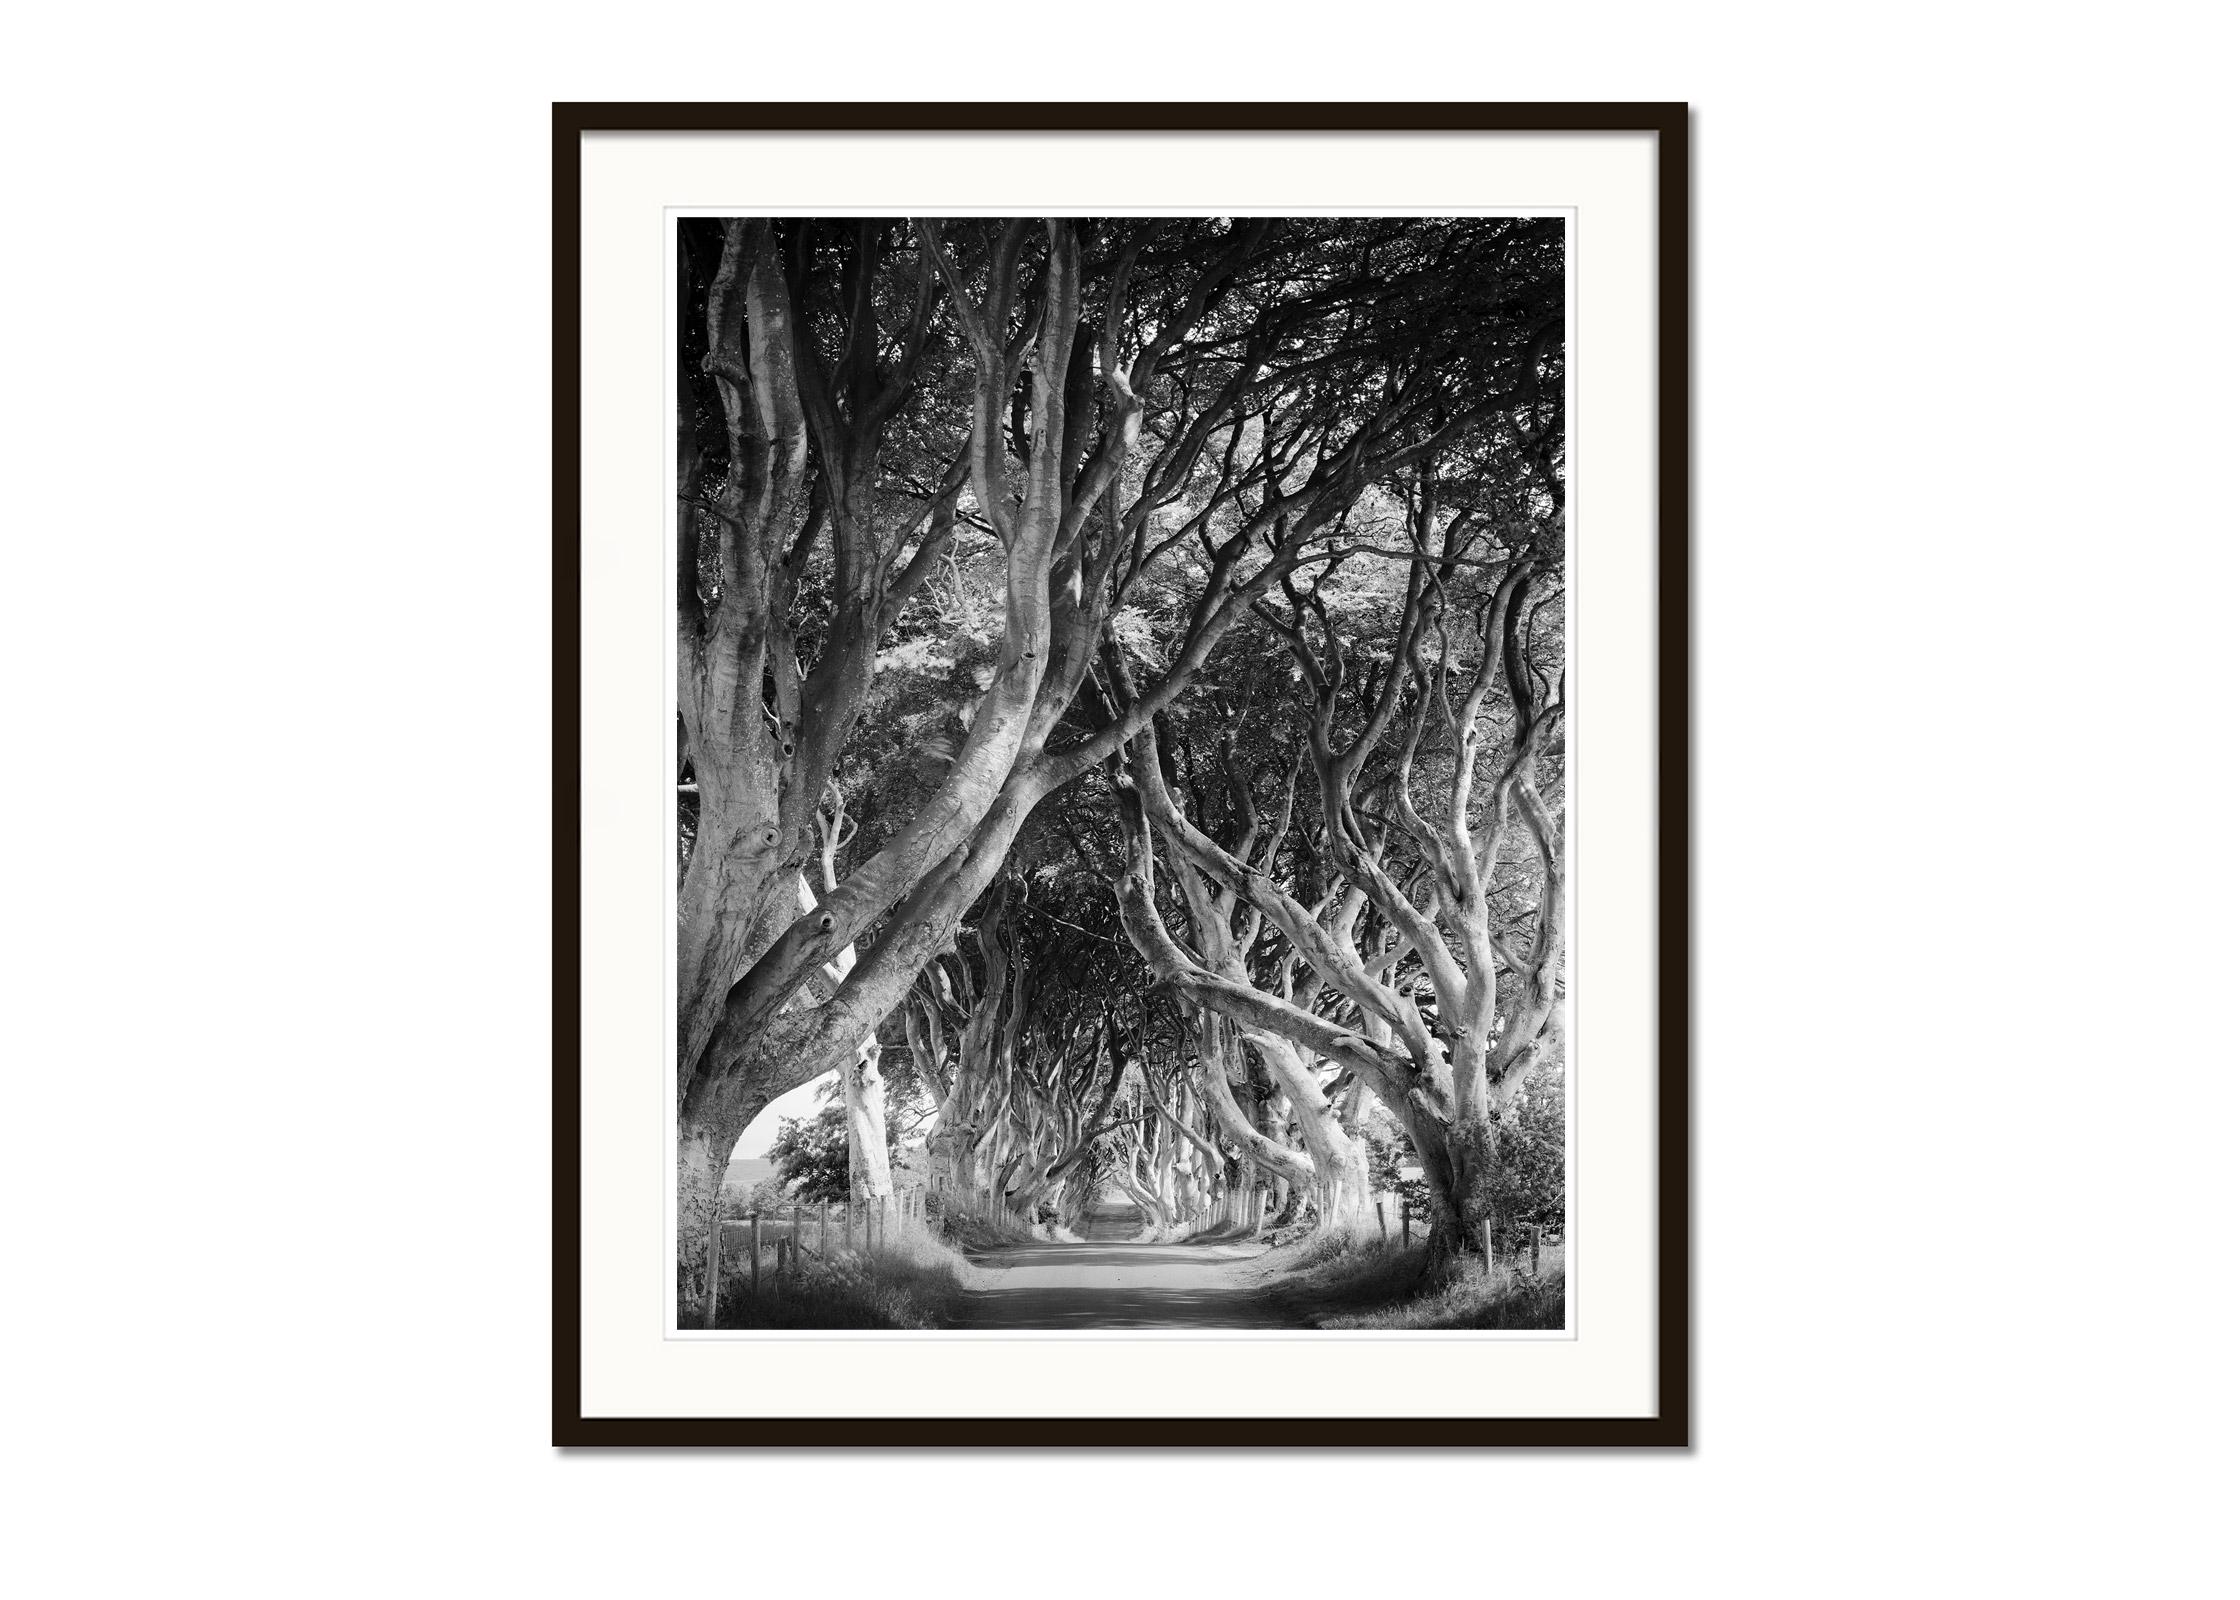 Dunkle Hölzer, Baumallee, mystische Wälder, Schwarz-Weiß-Landschaftsfotografie (Grau), Black and White Photograph, von Gerald Berghammer